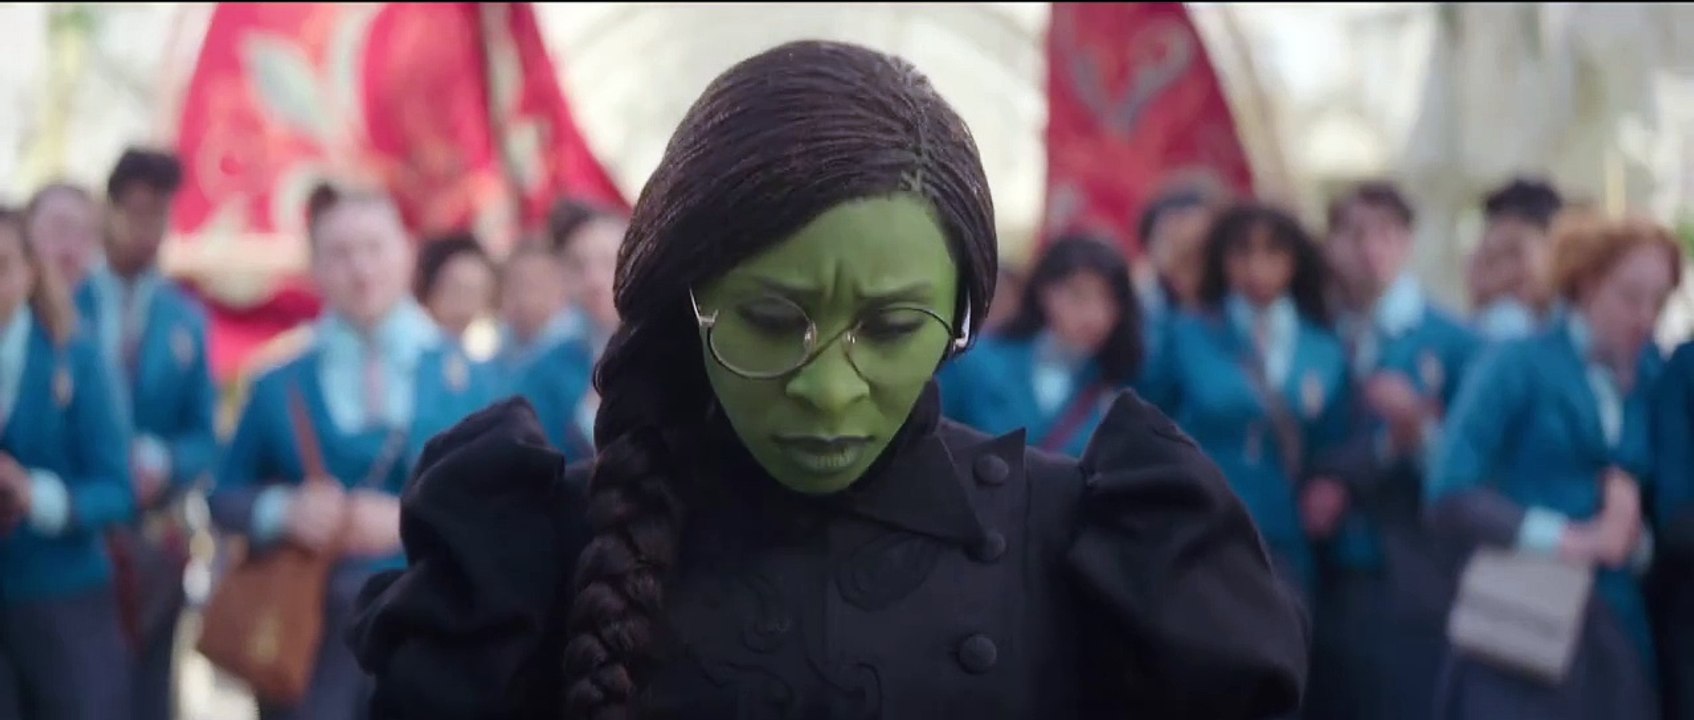 Wicked: Der neue Trailer zum Fantasy-Musical entführt uns in die magische Welt von Oz